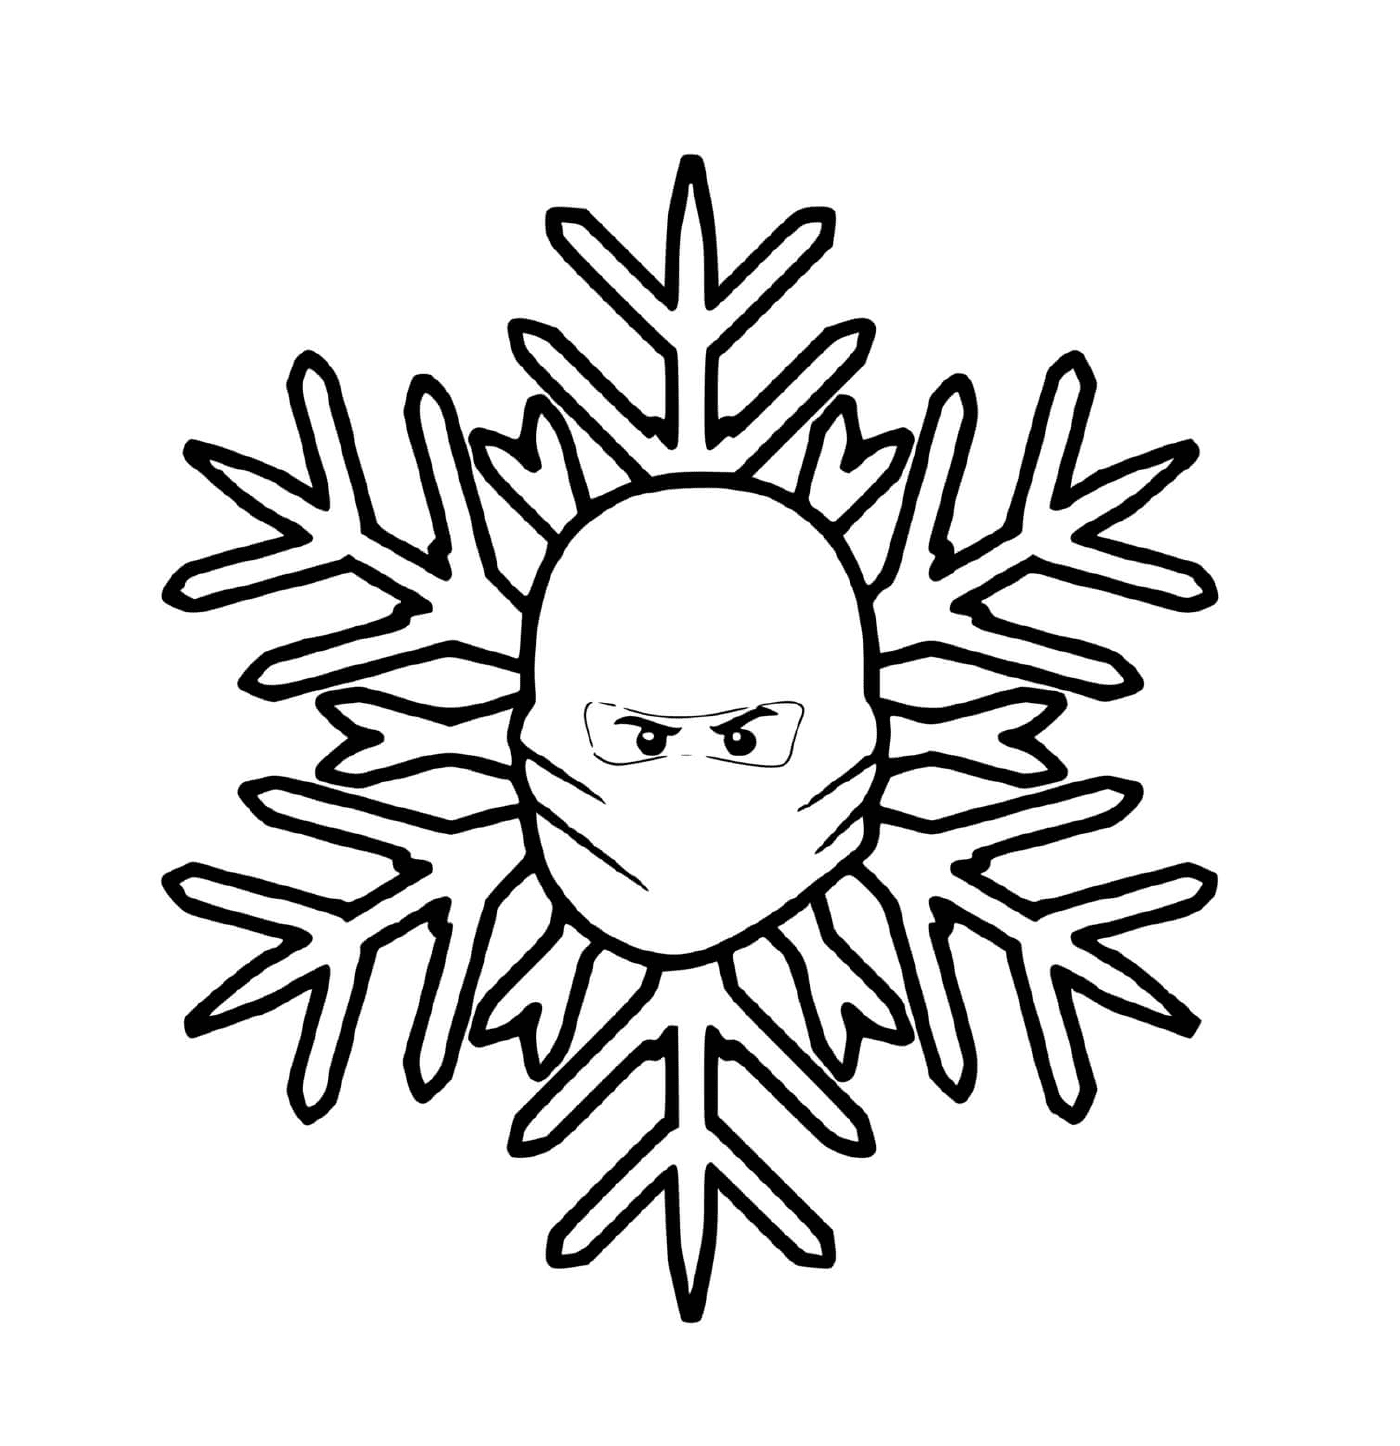  A snowflake with a ninja mask 